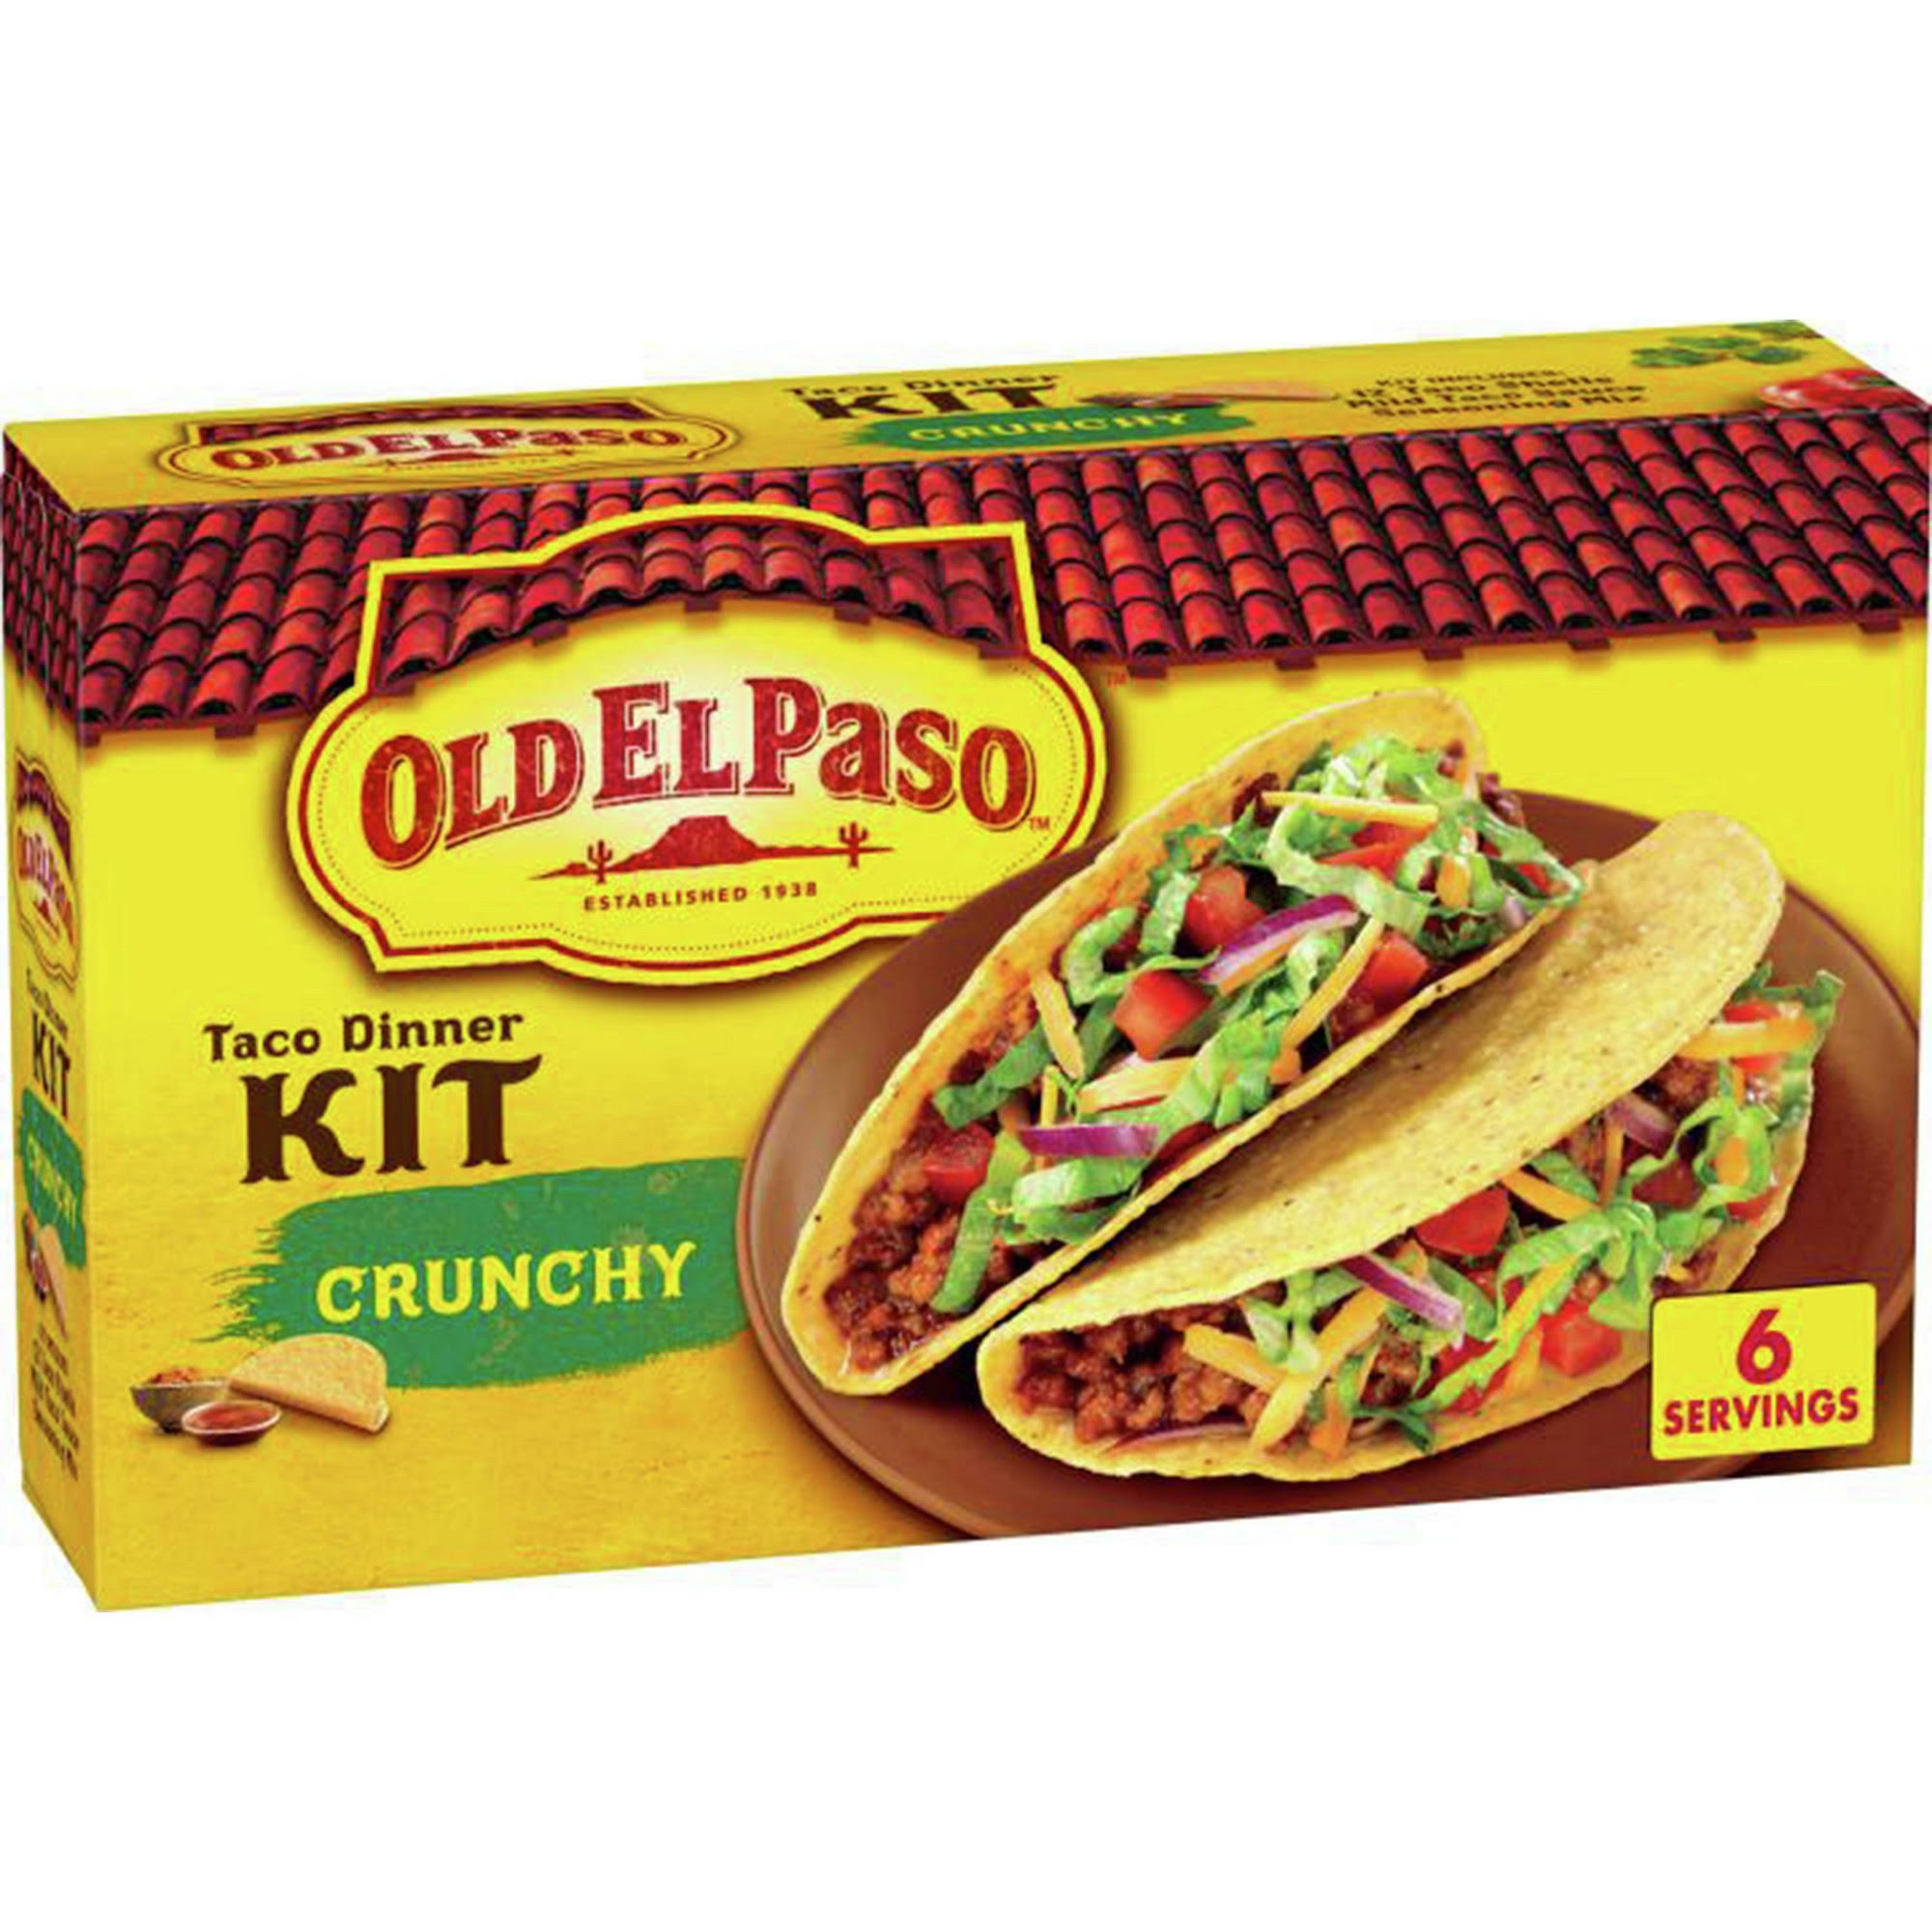 Old El Paso Crunchy Taco Dinner Kit - 8.8oz